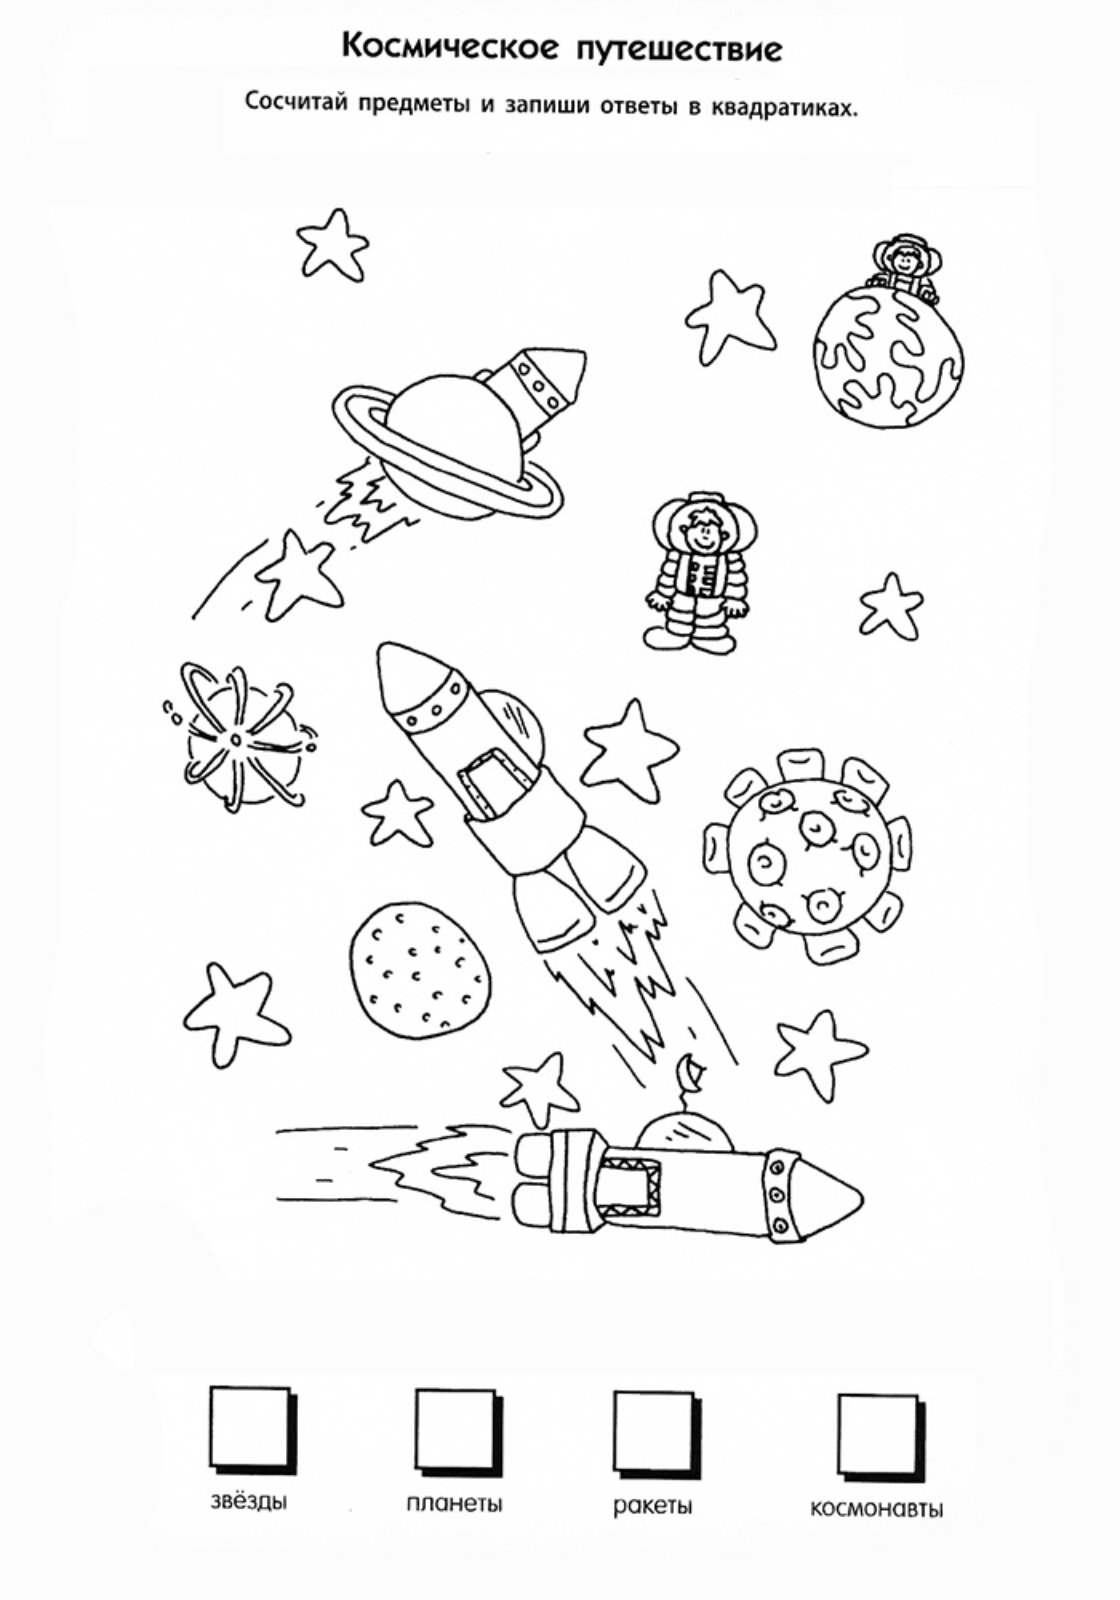 Тема космос для детей 7 лет. Космос задания для детей. Космические задания для дошкольников. Задания по теме космос для дошкольников. Космонавтика задания для дошкольников.